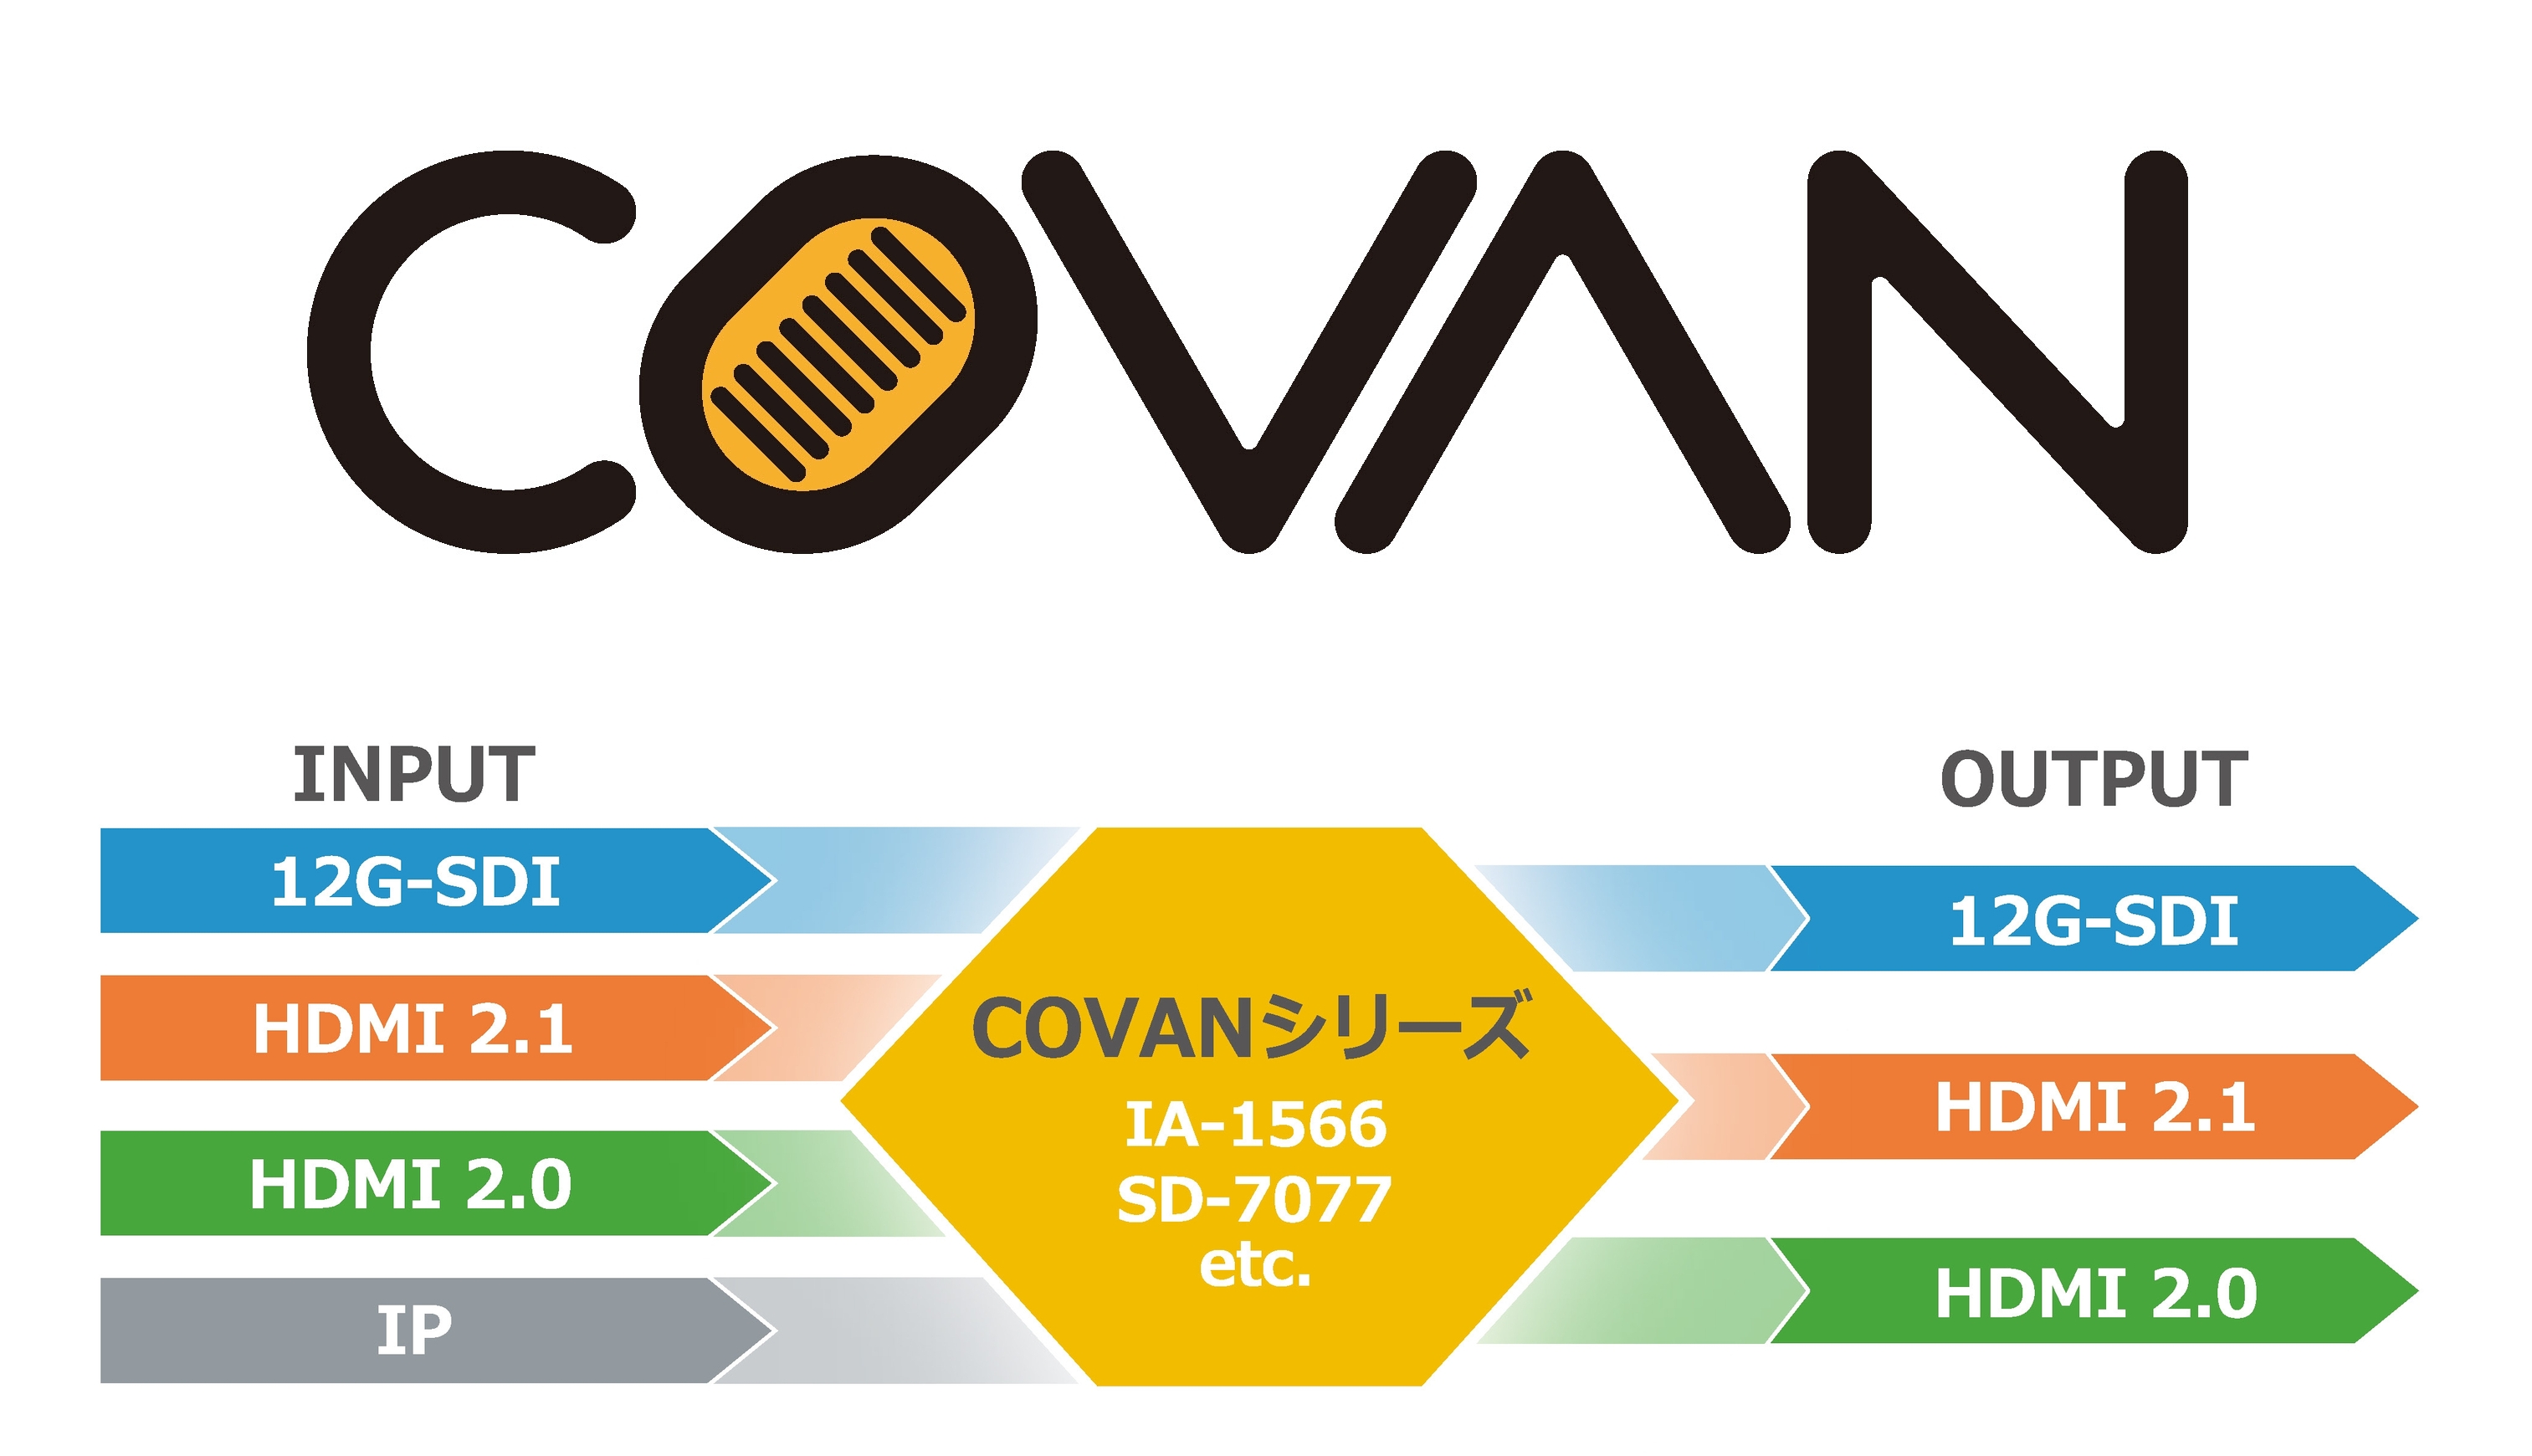 小型で軽量、安価なコンバーター COVANシリーズ IA-1566、SD-7077を発売 | アストロデザイン株式会社